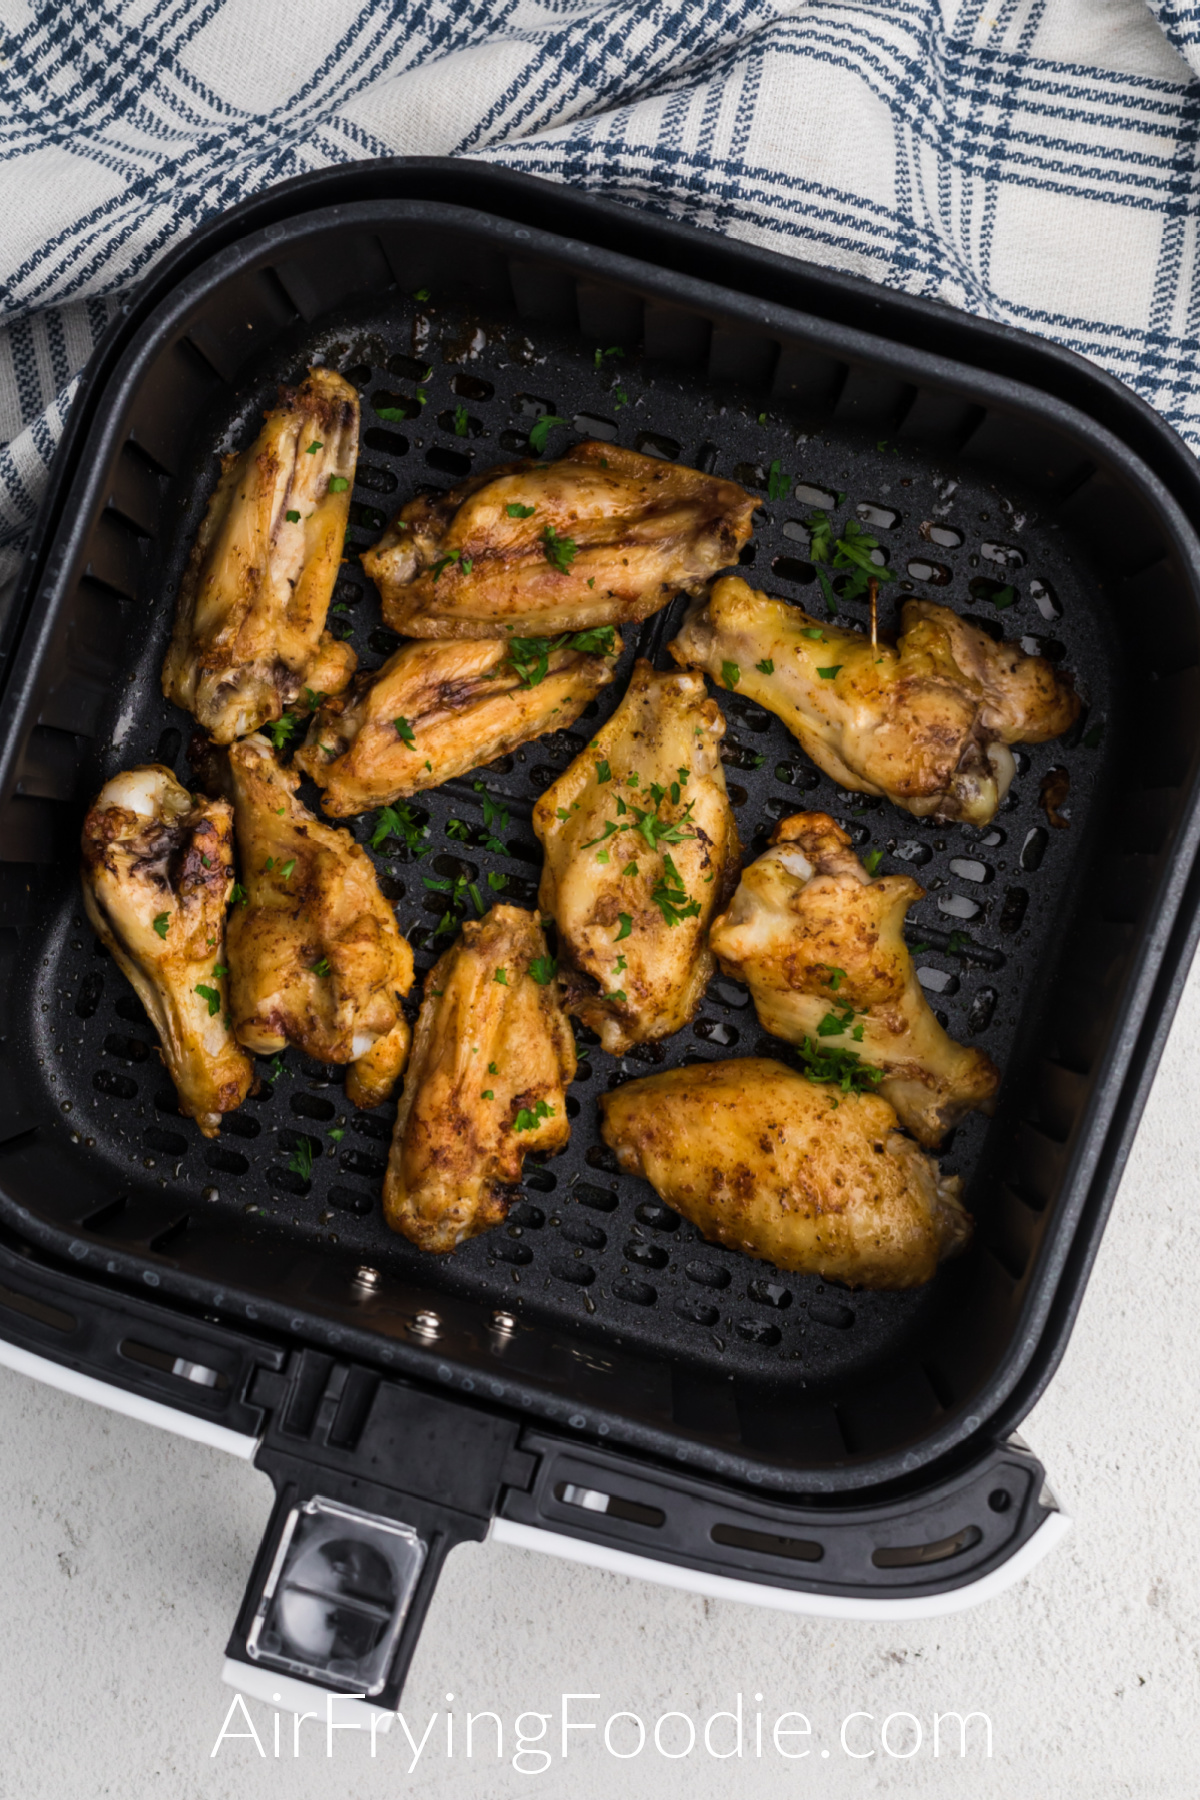 Seasoned frozen chicken wings in air fryer basket.